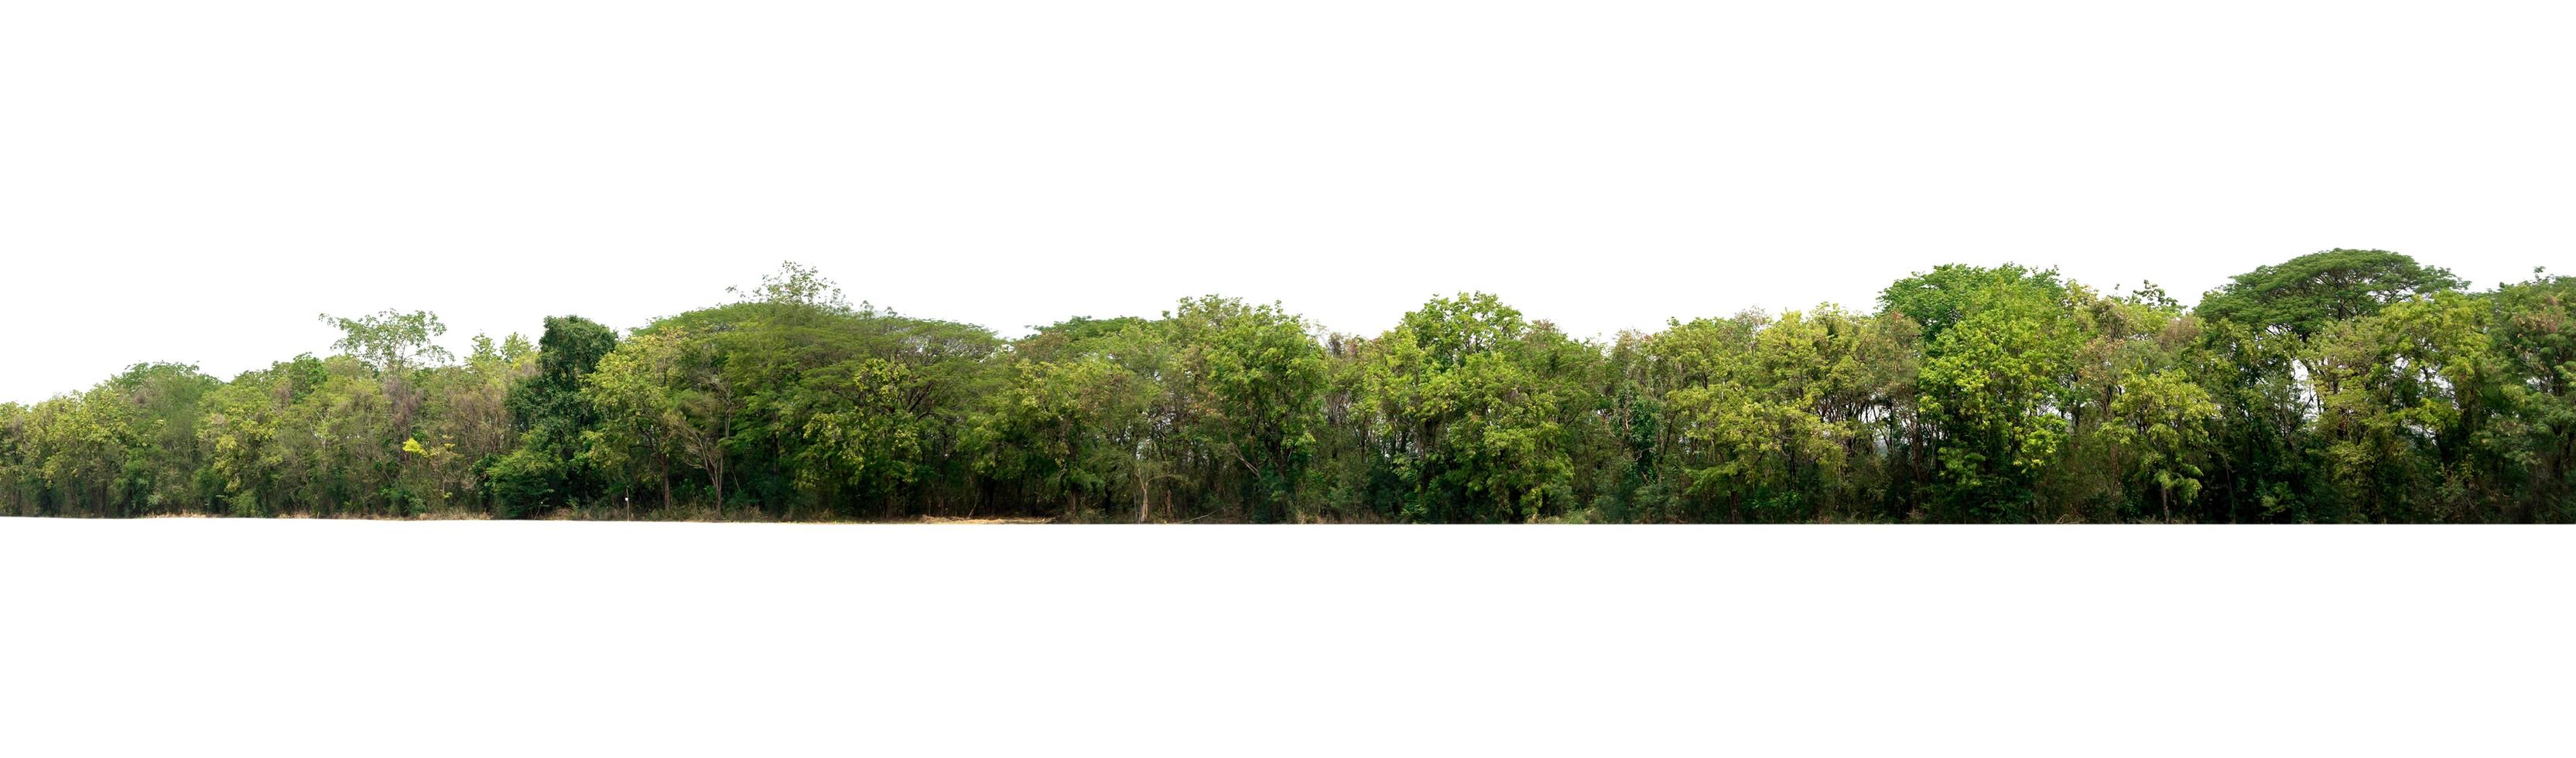 landscape tree isolate on white background photo